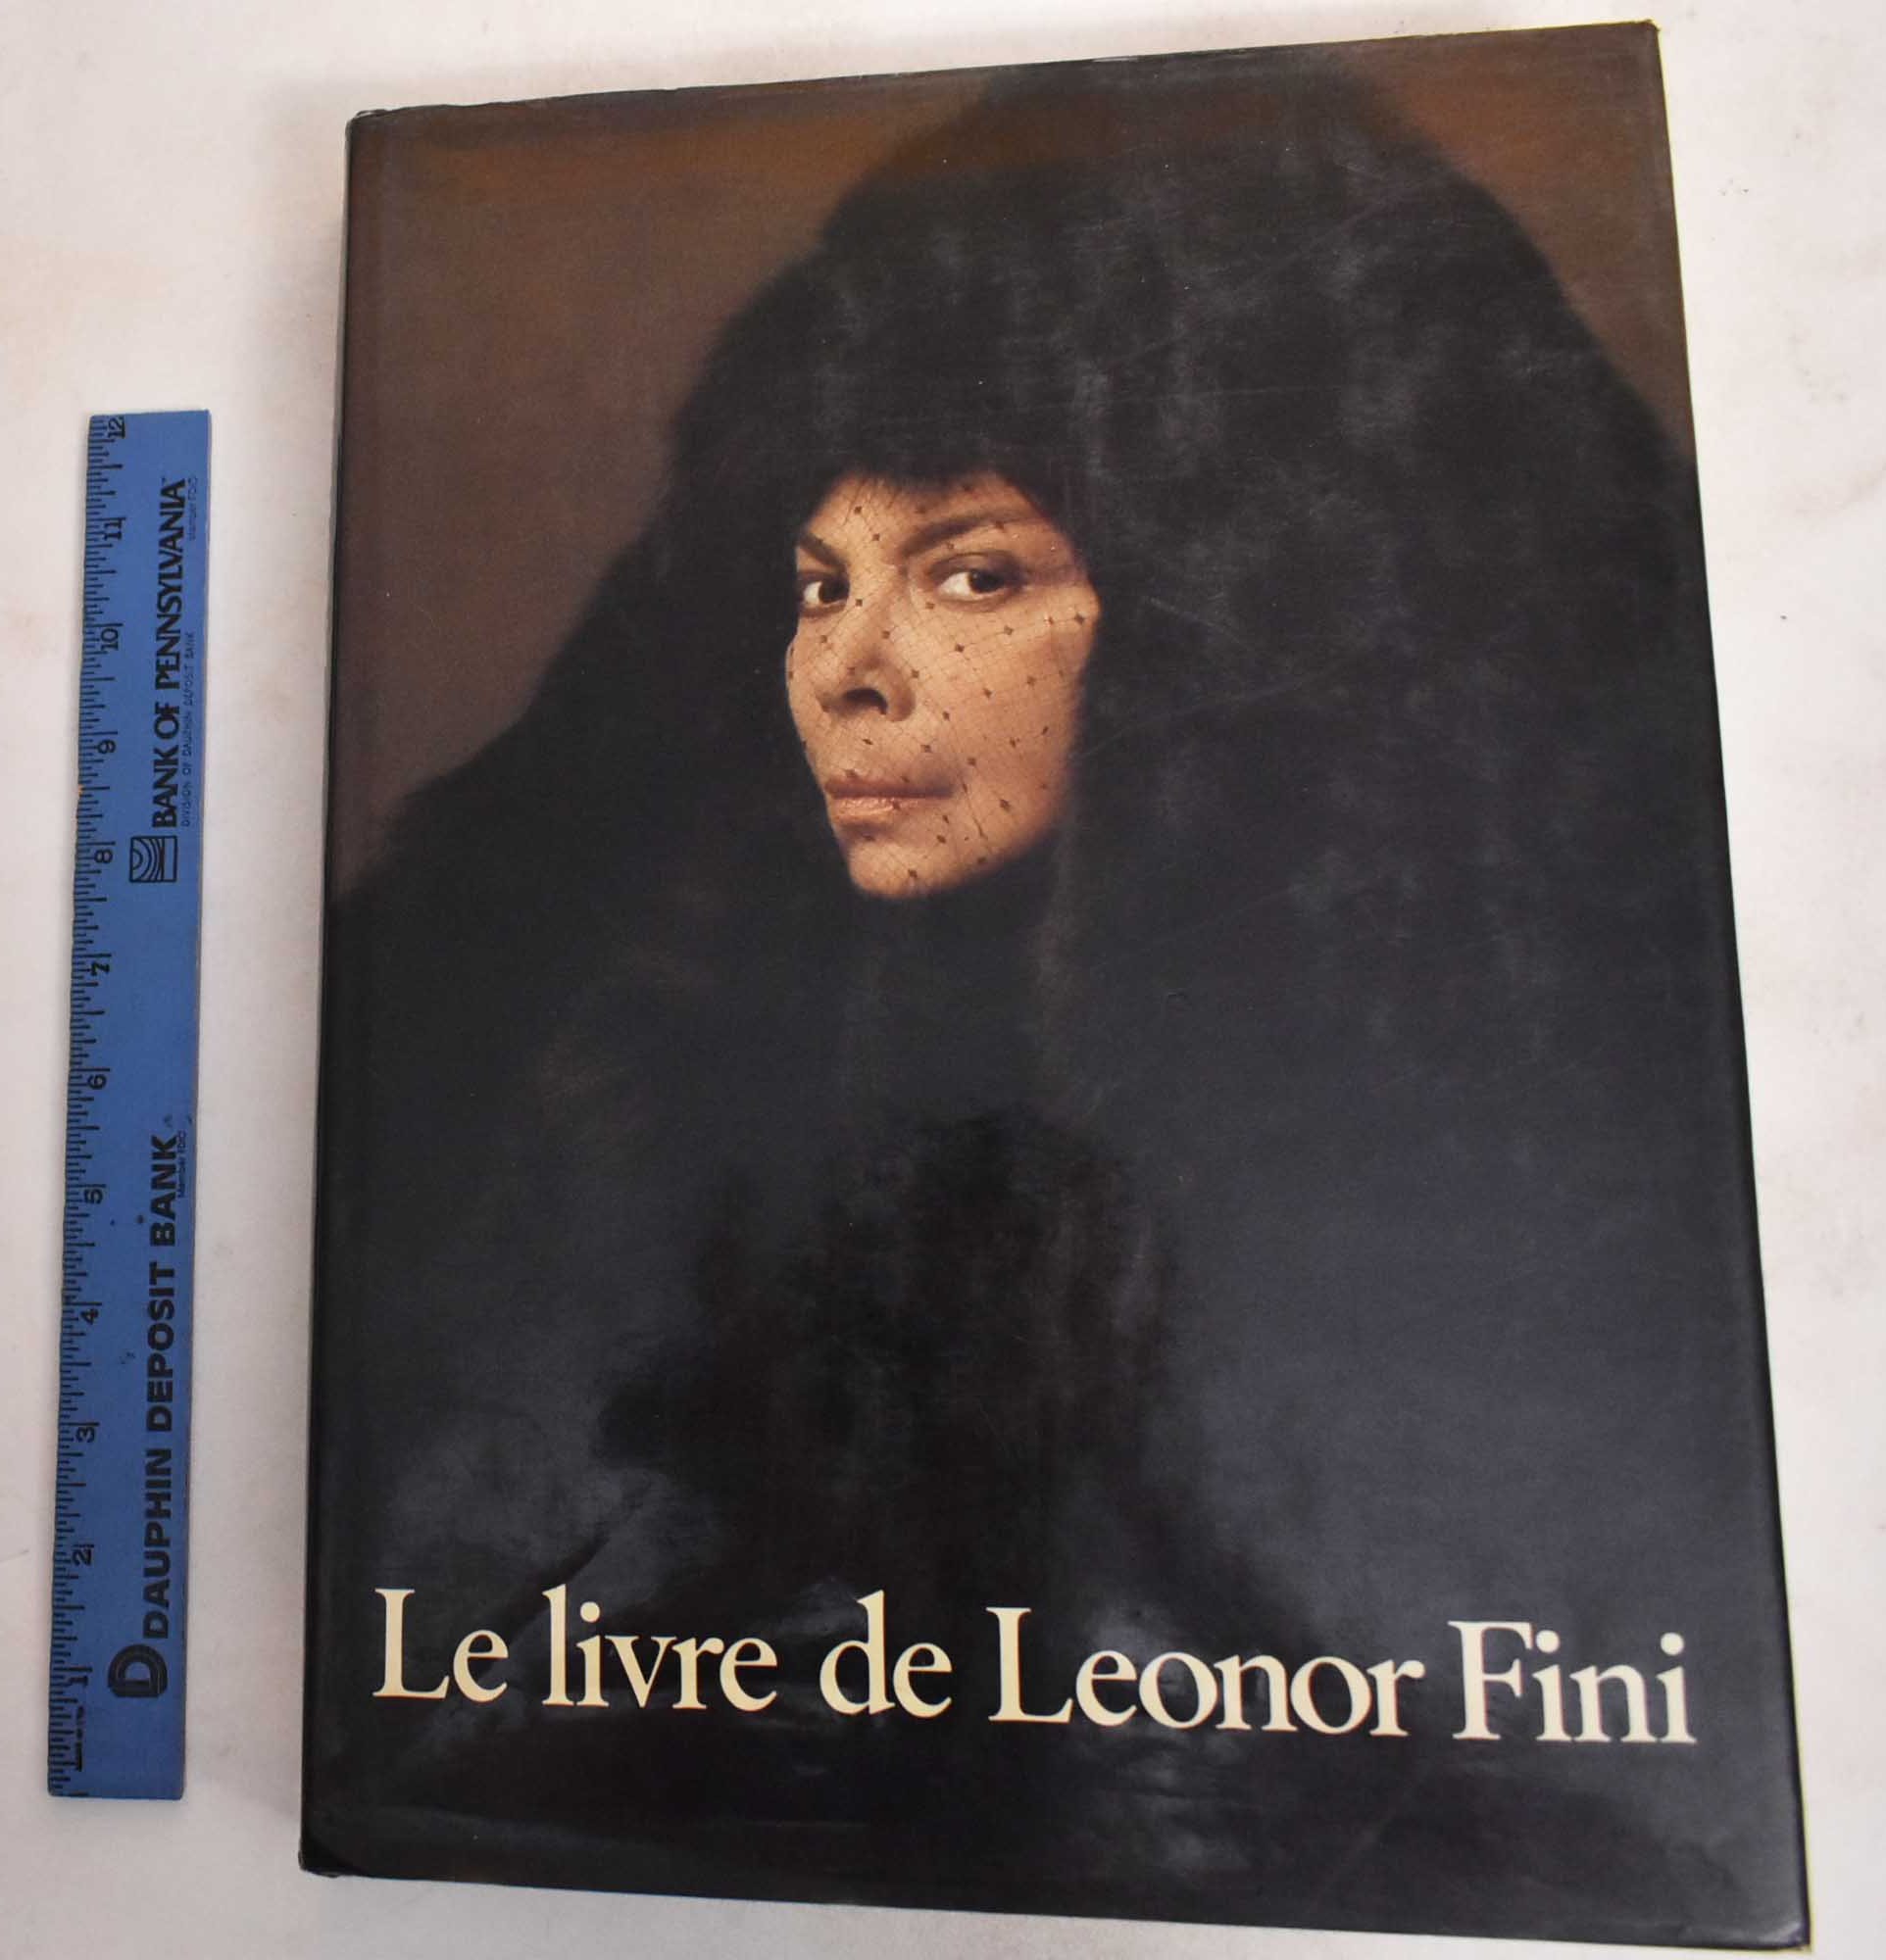 Le Livre de Leonor Fini - Fini, Leonor and Jose Alvarez